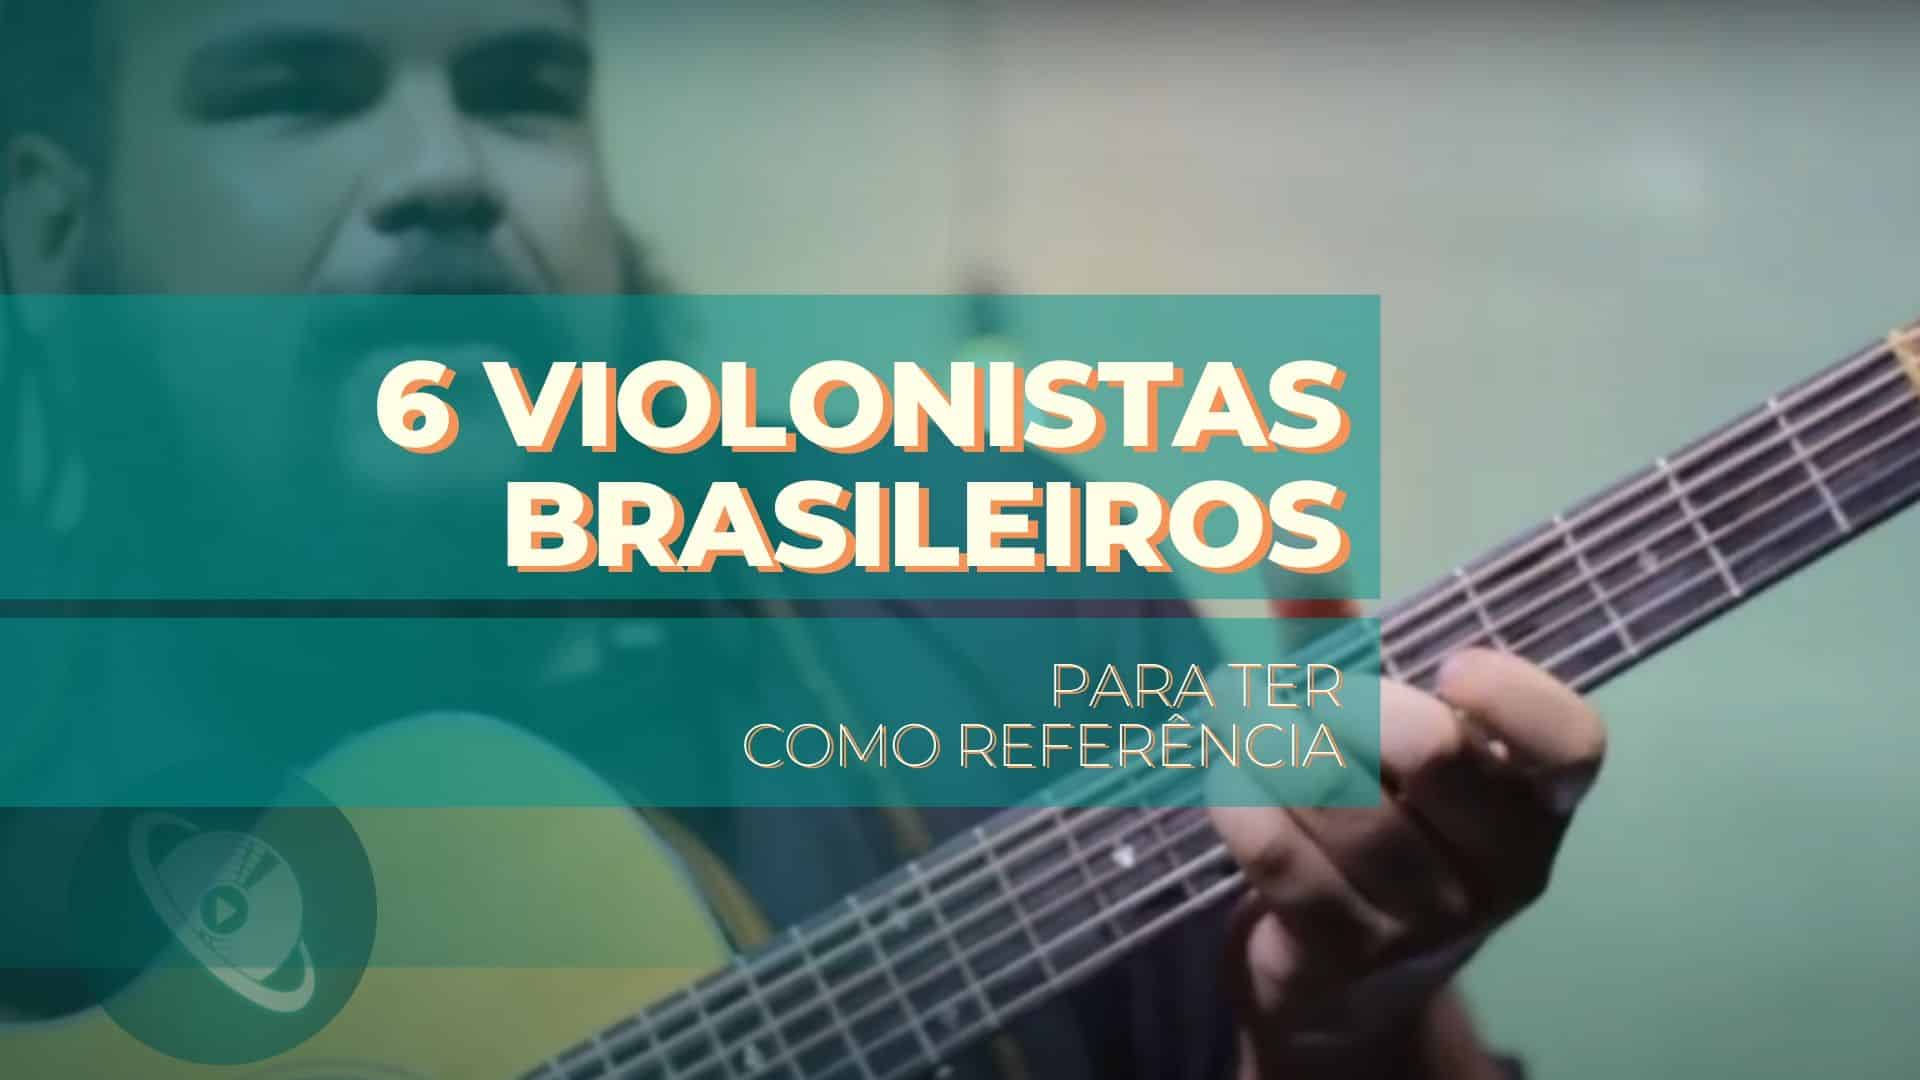 Conheça 6 violonistas brasileiros para ter como referência.